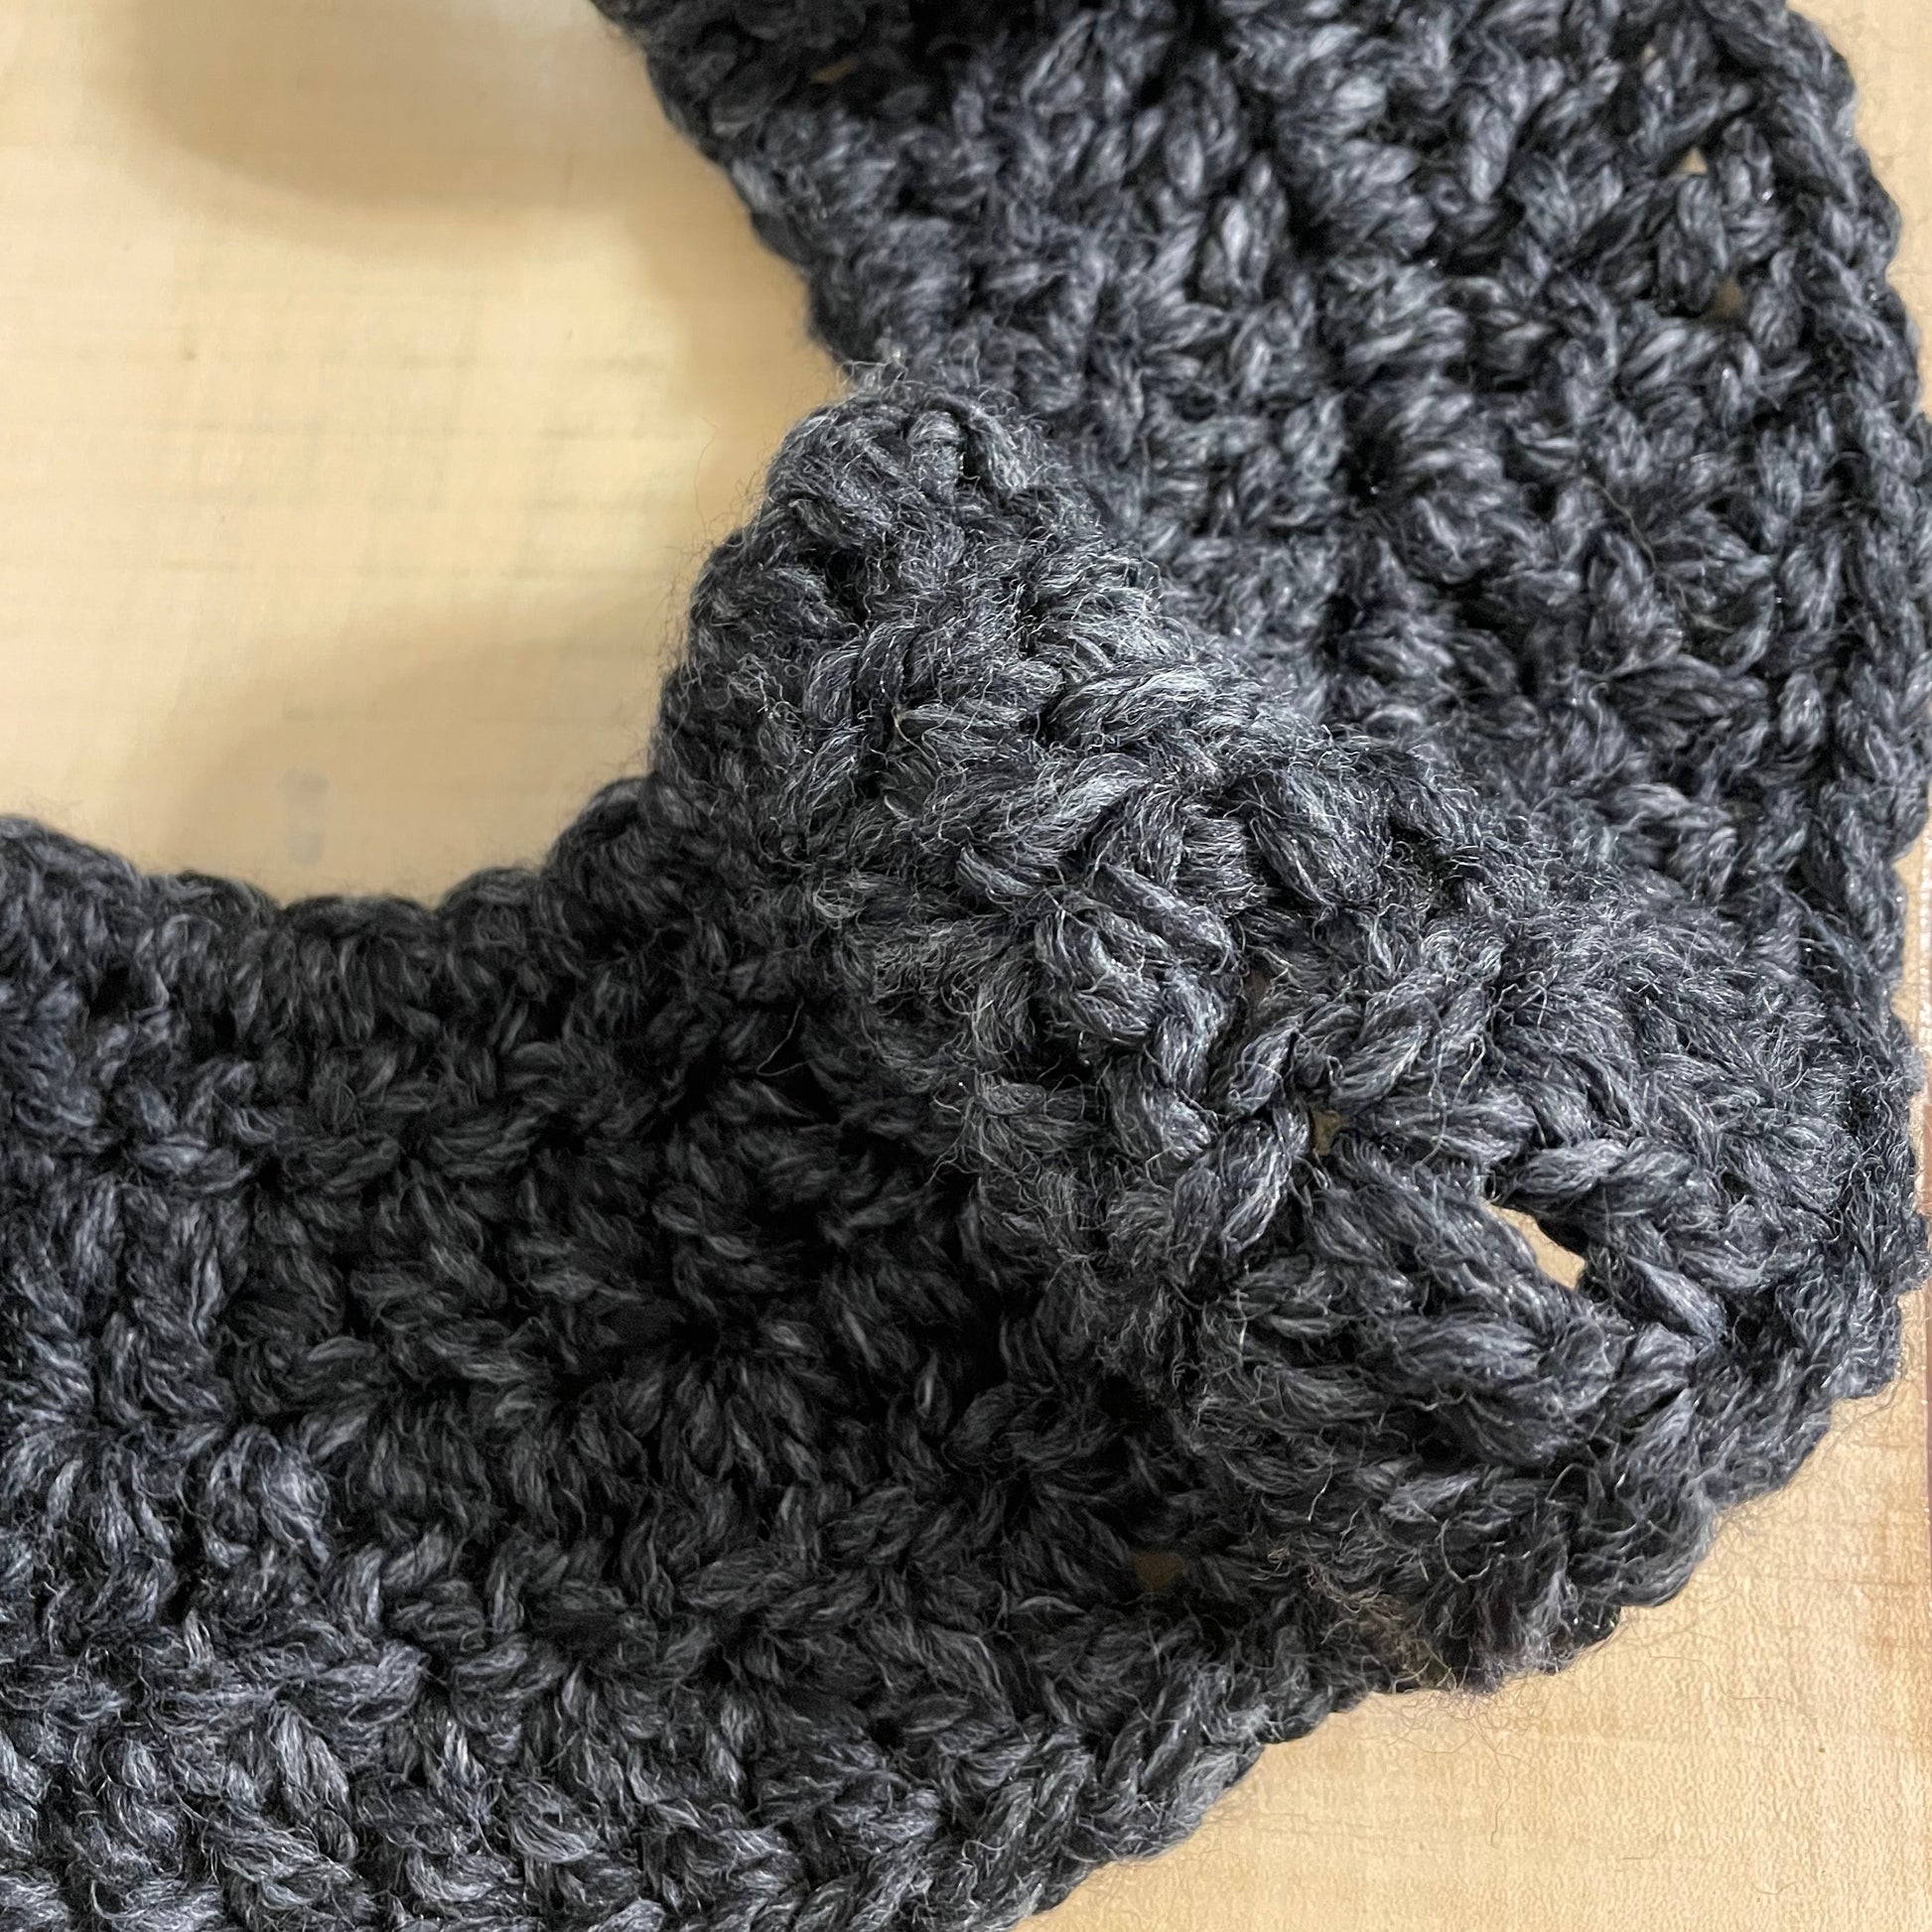 closeup of yarn and close knit stitch